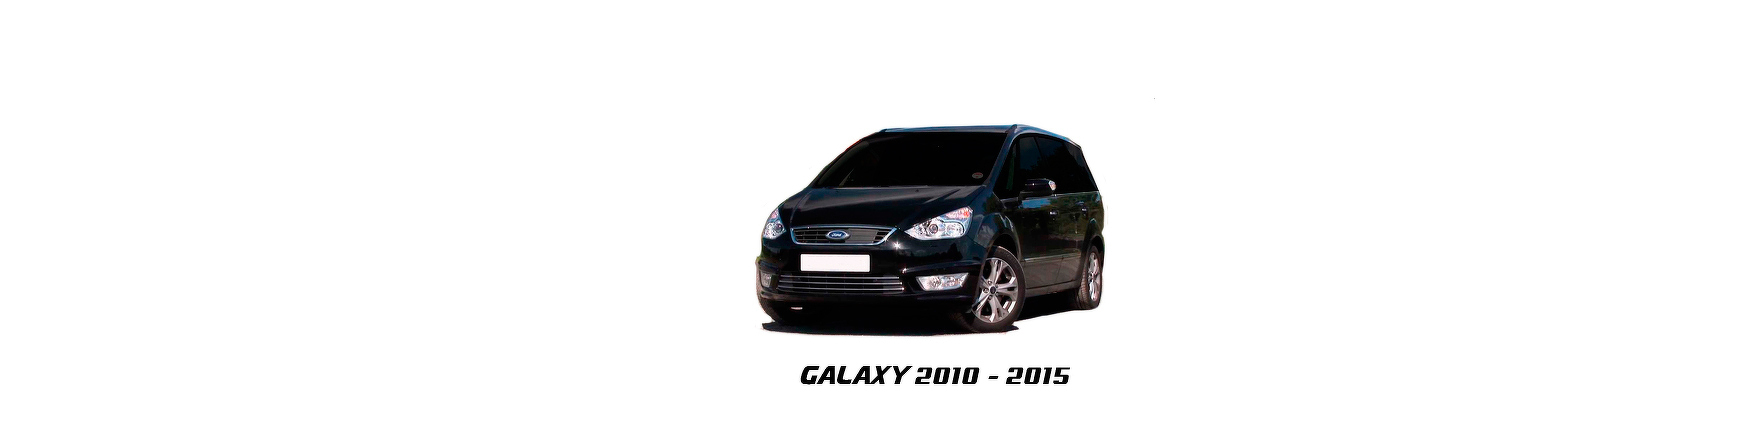 Recambios de Ford Galaxy (WA6) de 2010 a 2015 | Veramauto.es